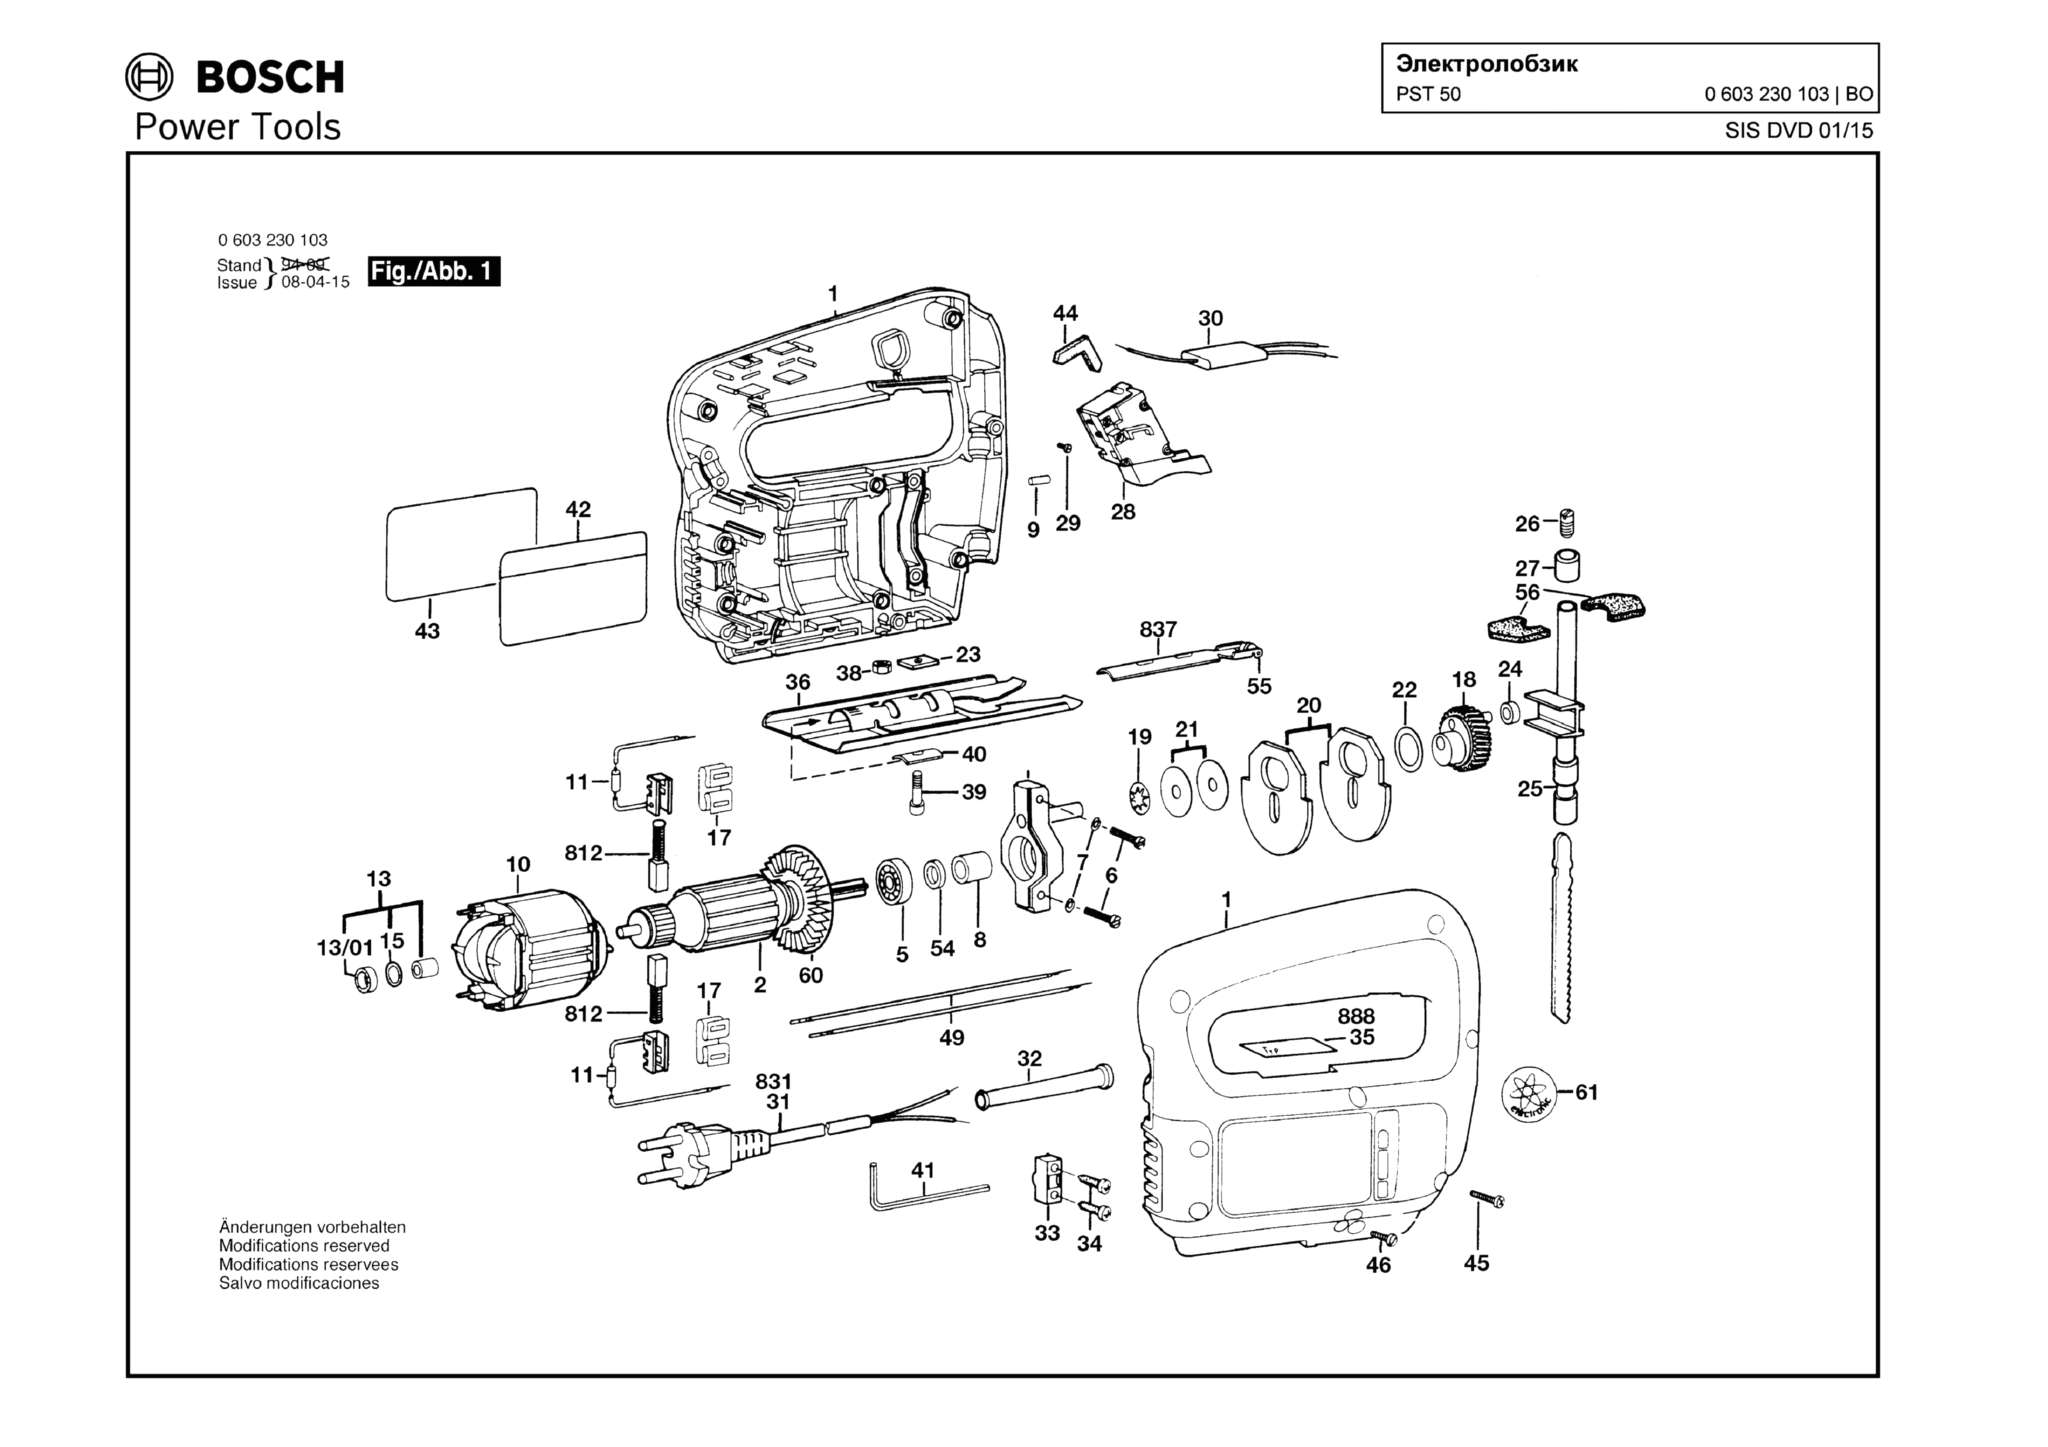 Запчасти, схема и деталировка Bosch PST 50 (ТИП 0603230103)